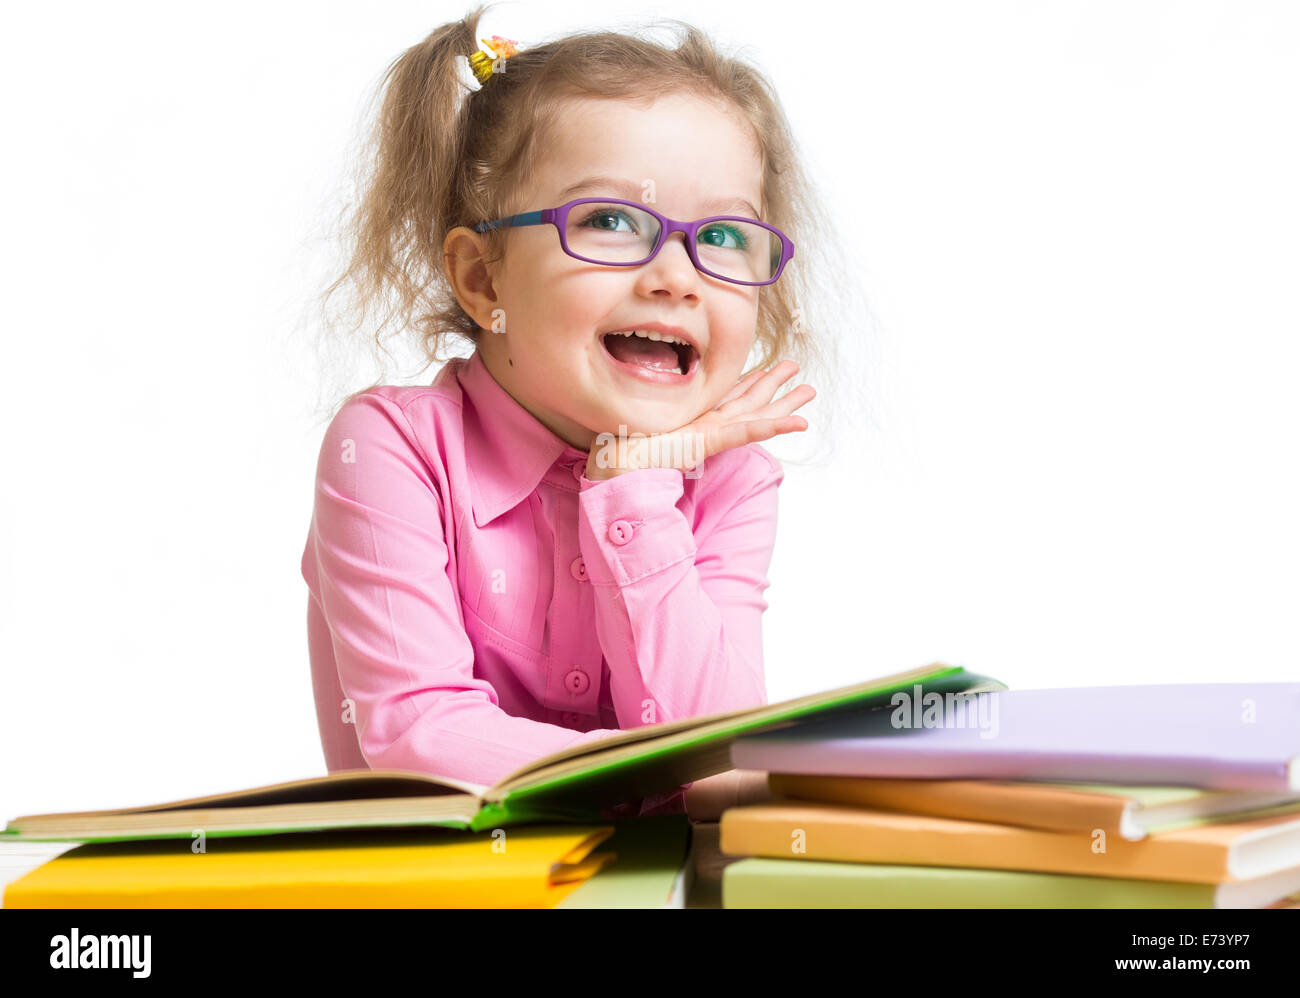 Funny kid ragazza con gli occhiali lettura di libri Foto Stock